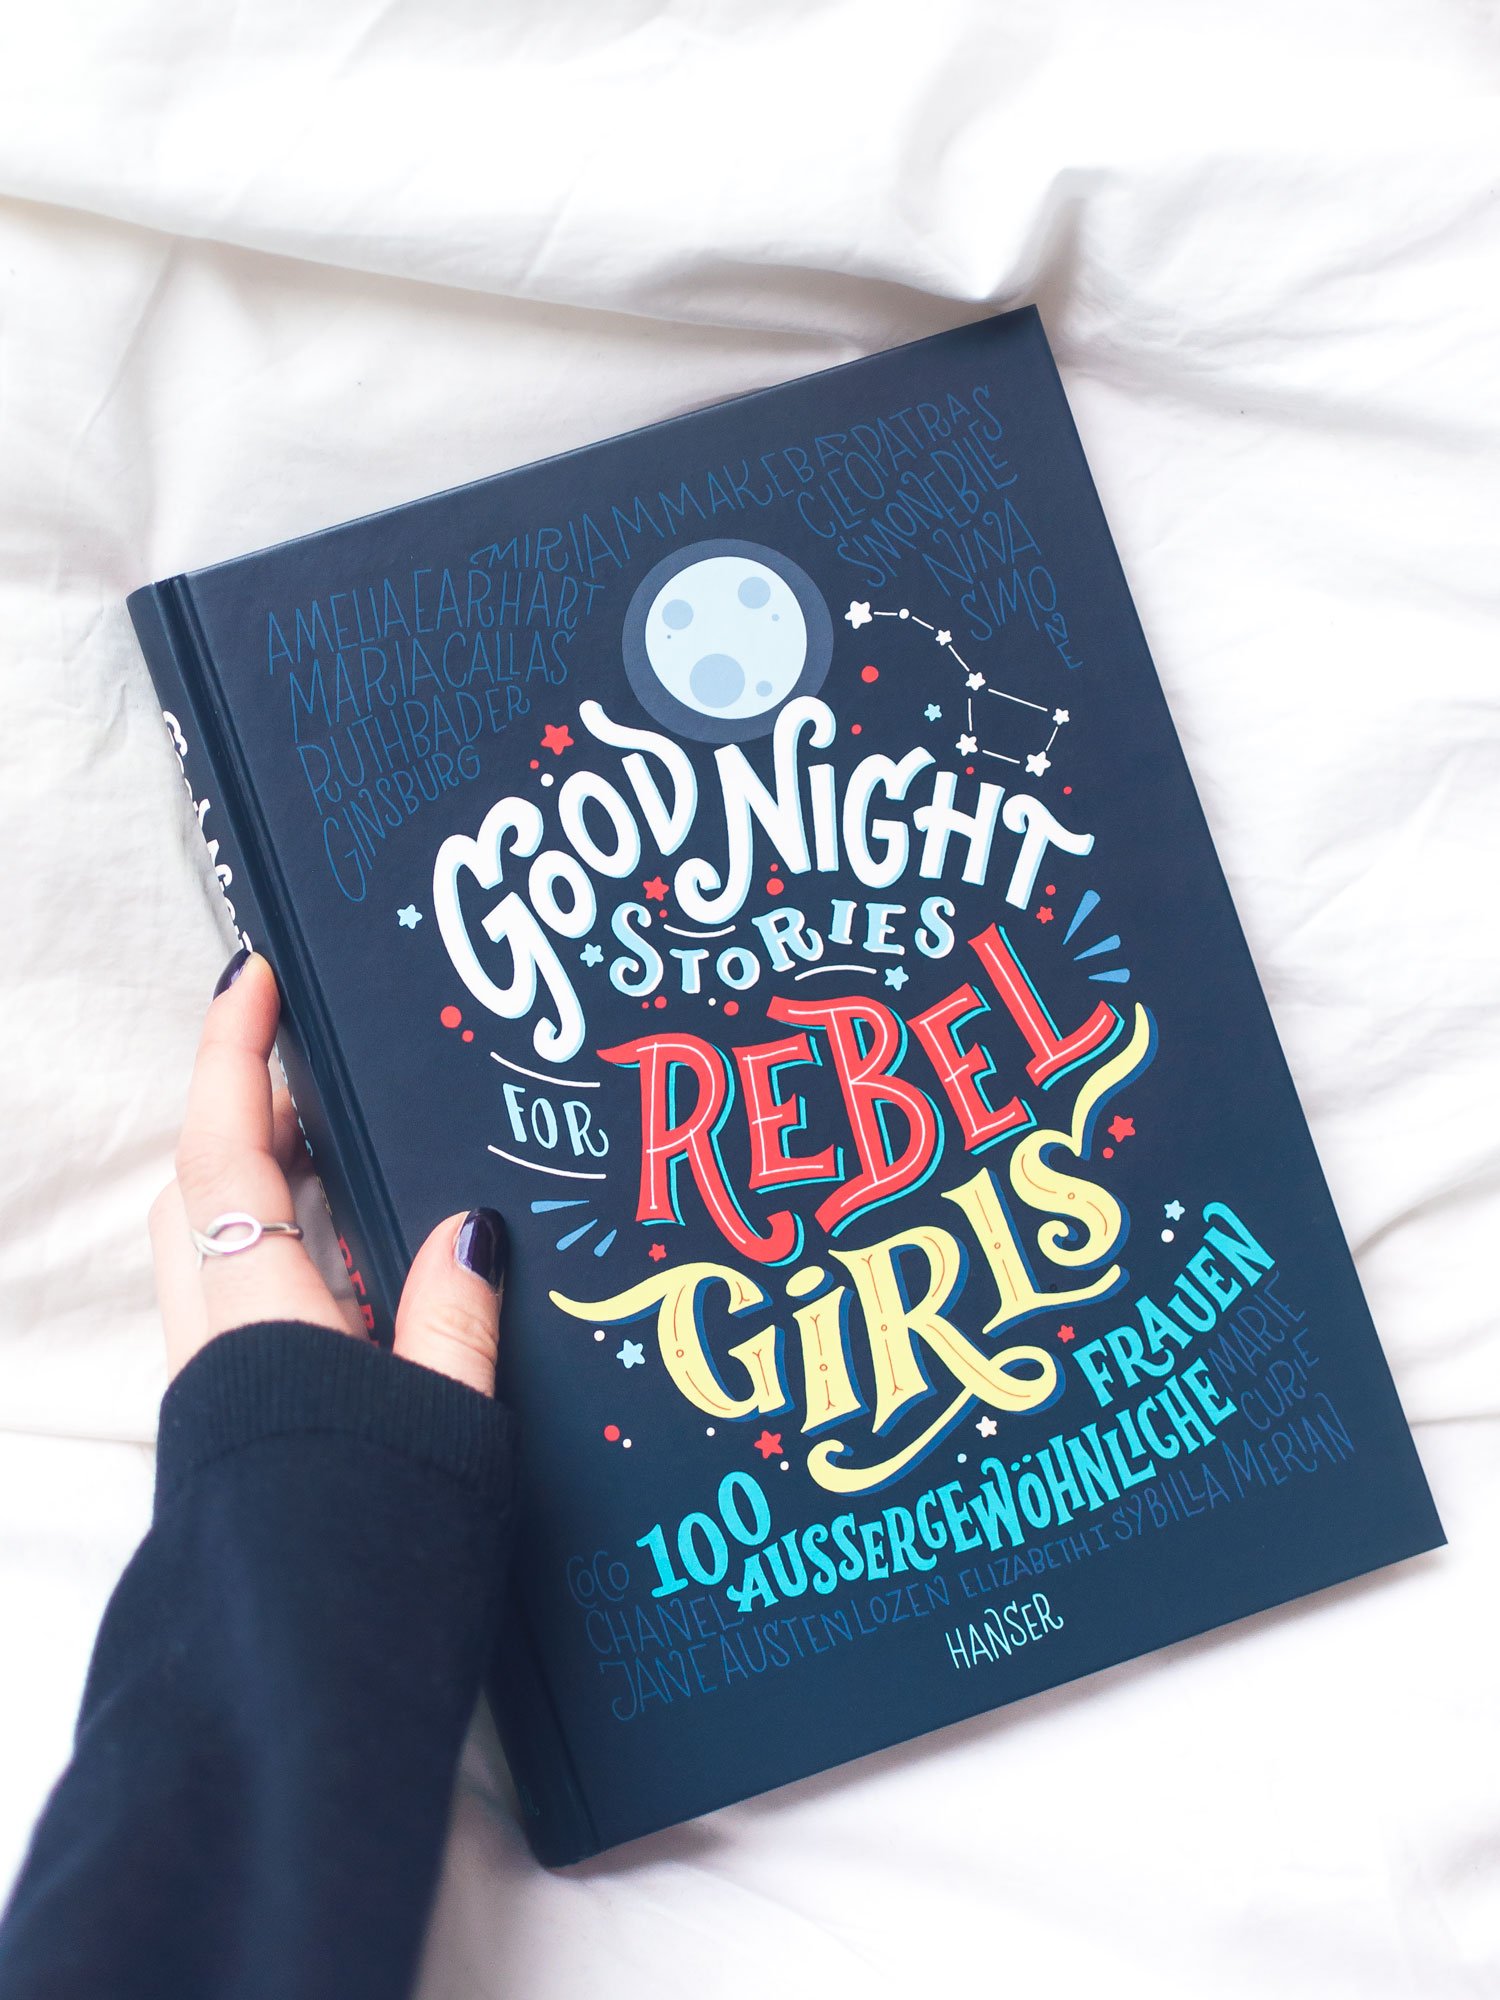 Good Night Stories for Rebel Girls #Persönlichkeit #Mut #Buchtipp #Vorbilder